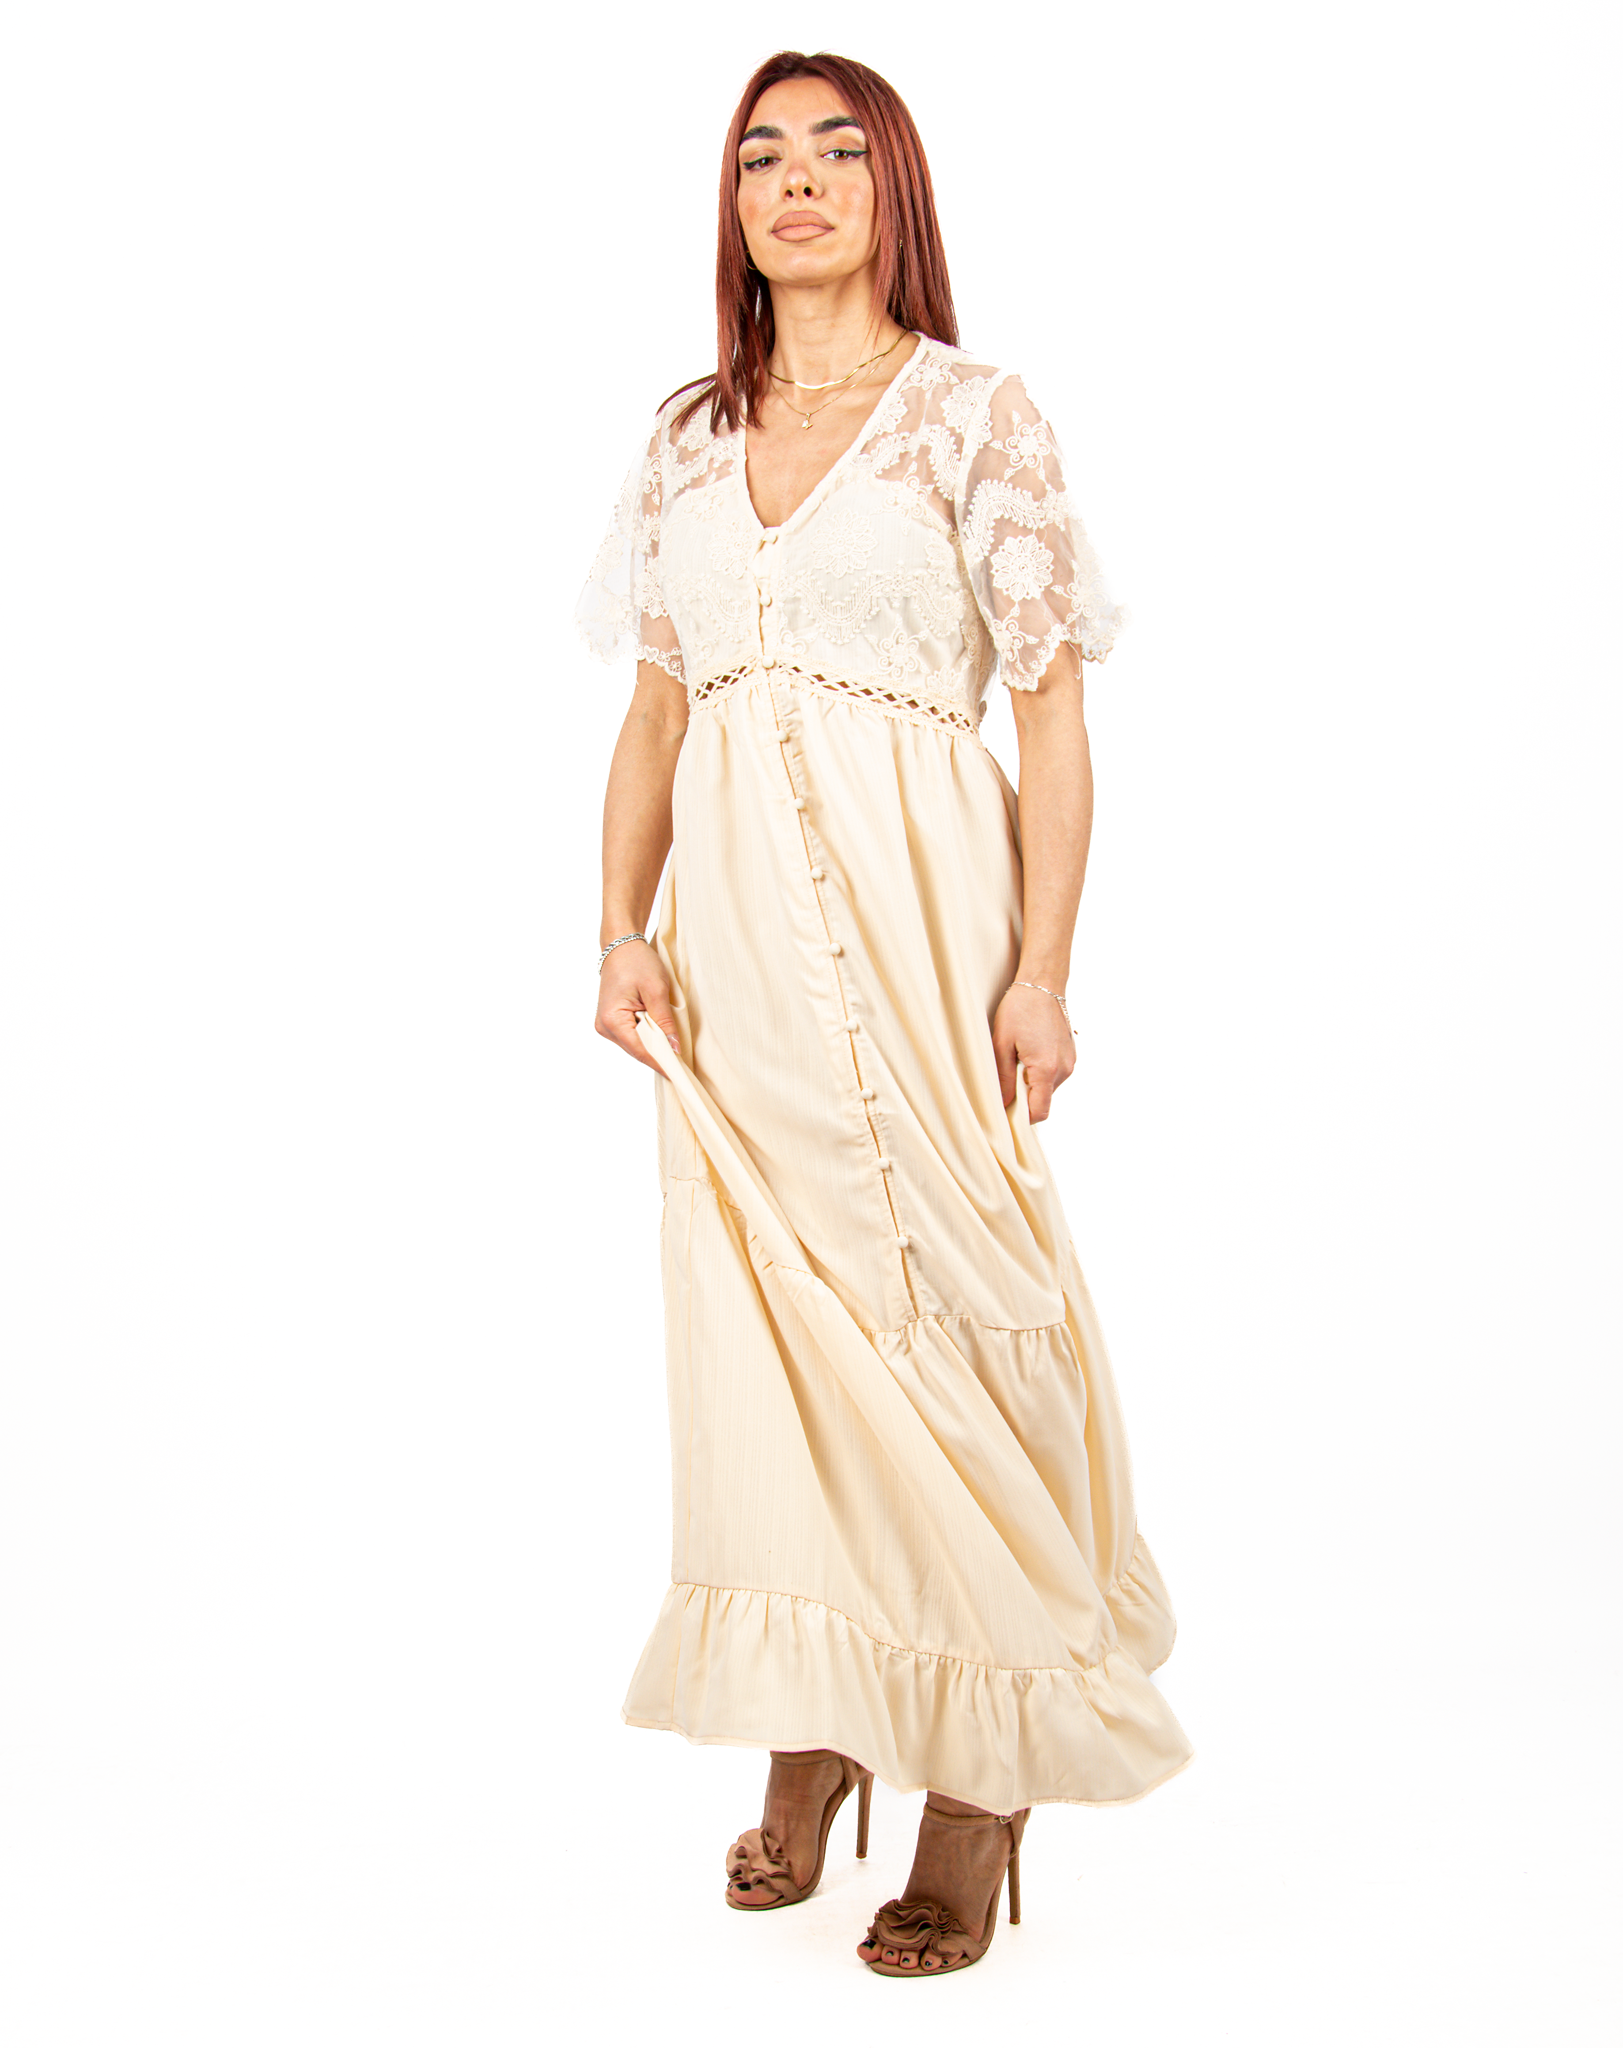 Φόρεμα Ρομαντικό Σεμιζιέ με Δαντέλα Μπεζ | EllenBoutique